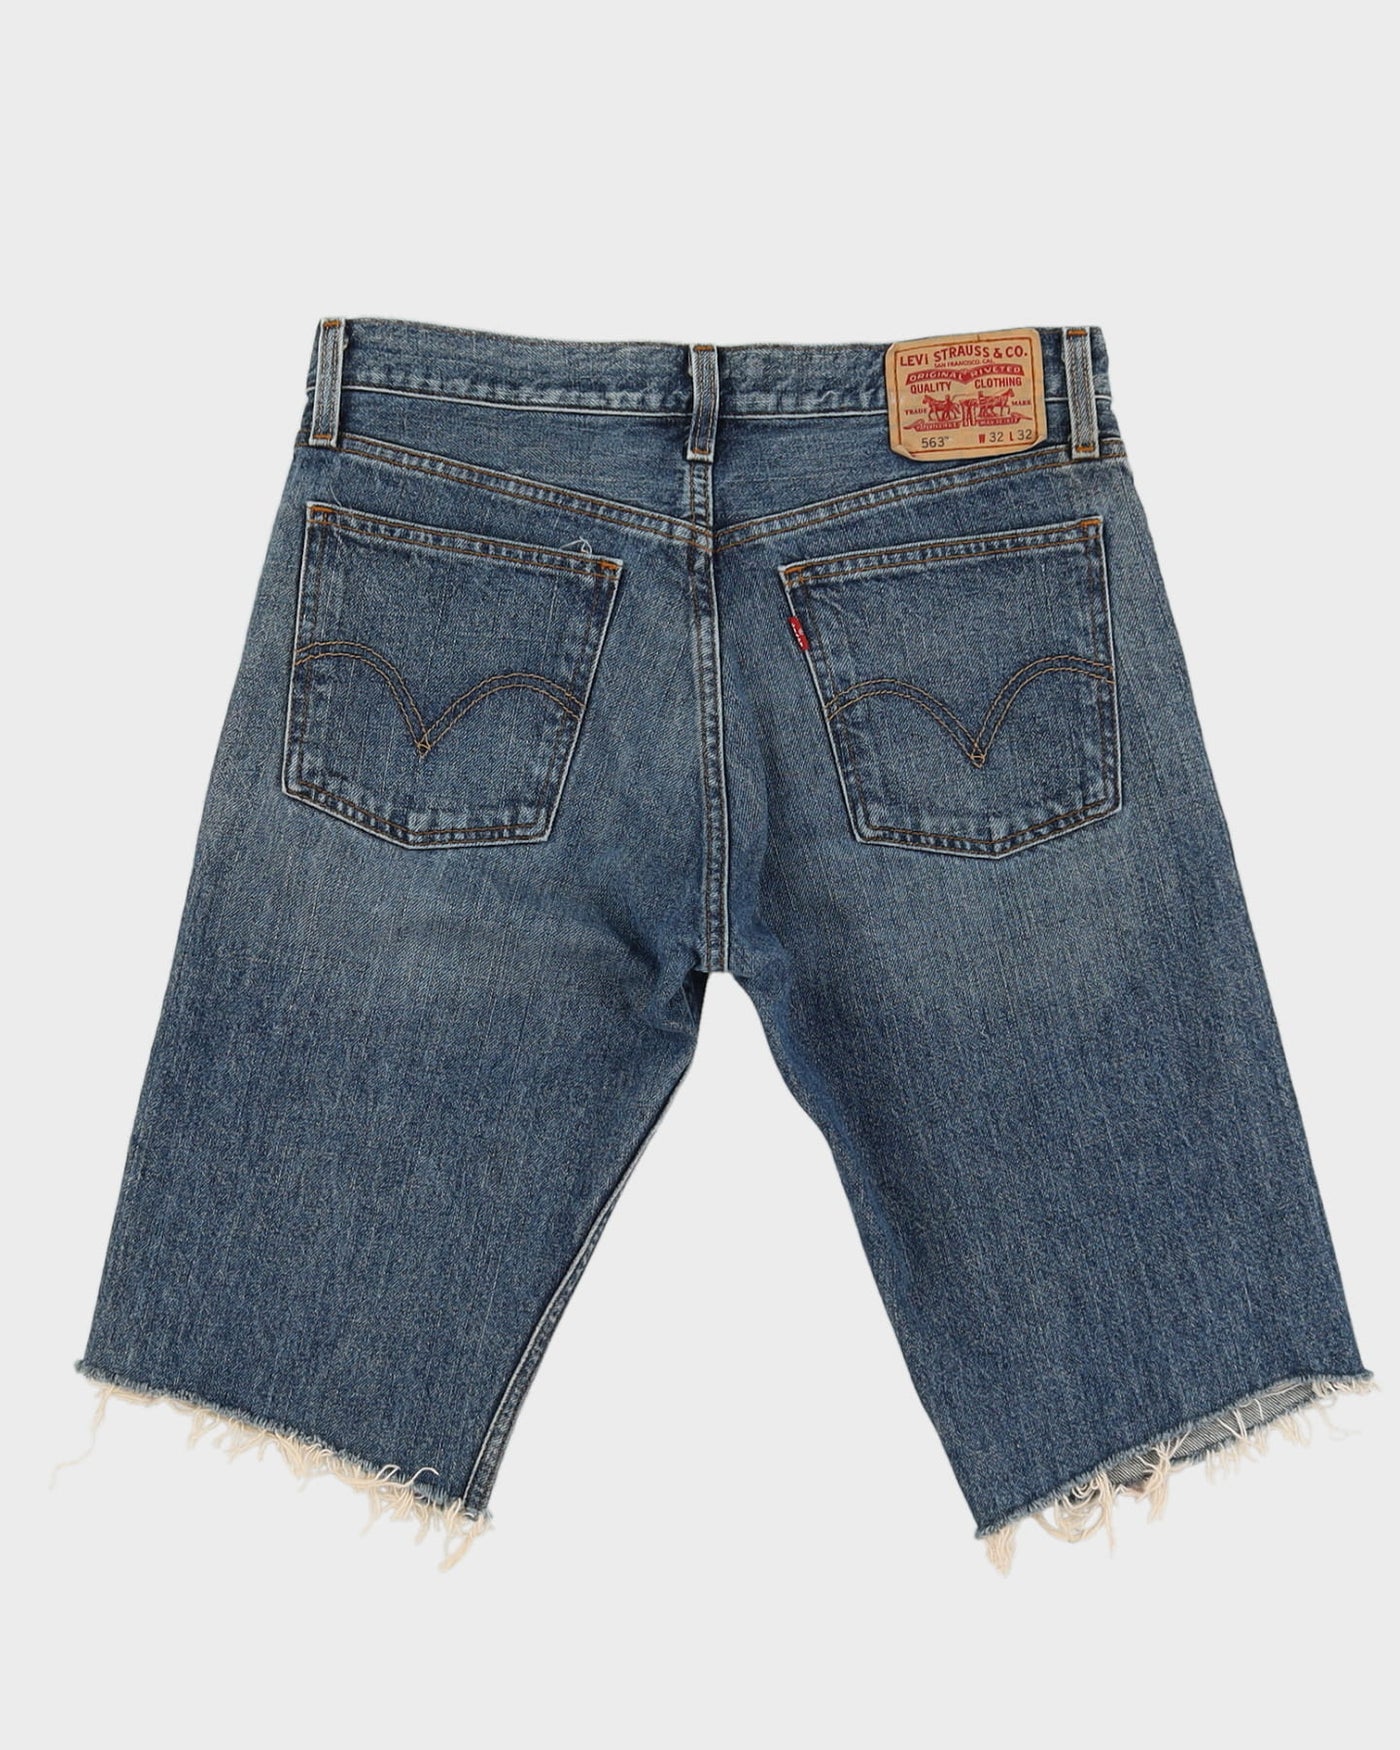 Vintage Levi's Blue Denim Shorts - W32